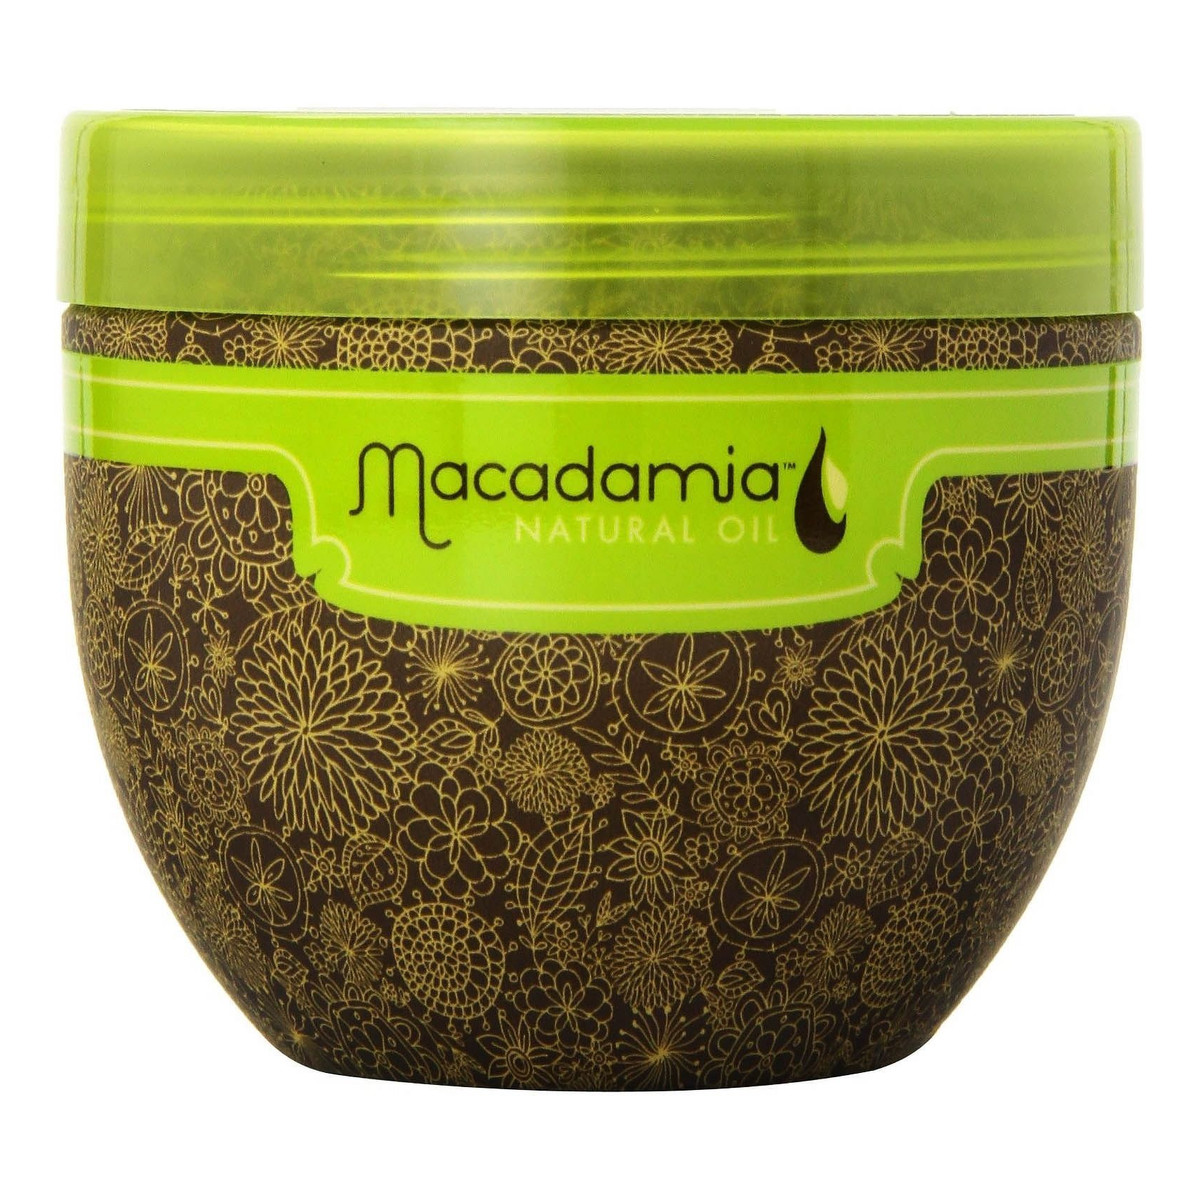 Macadamia Professional Natural Oil Deep Repair Masque Odżywcza maska do włosów suchych i zniszczonych 250ml